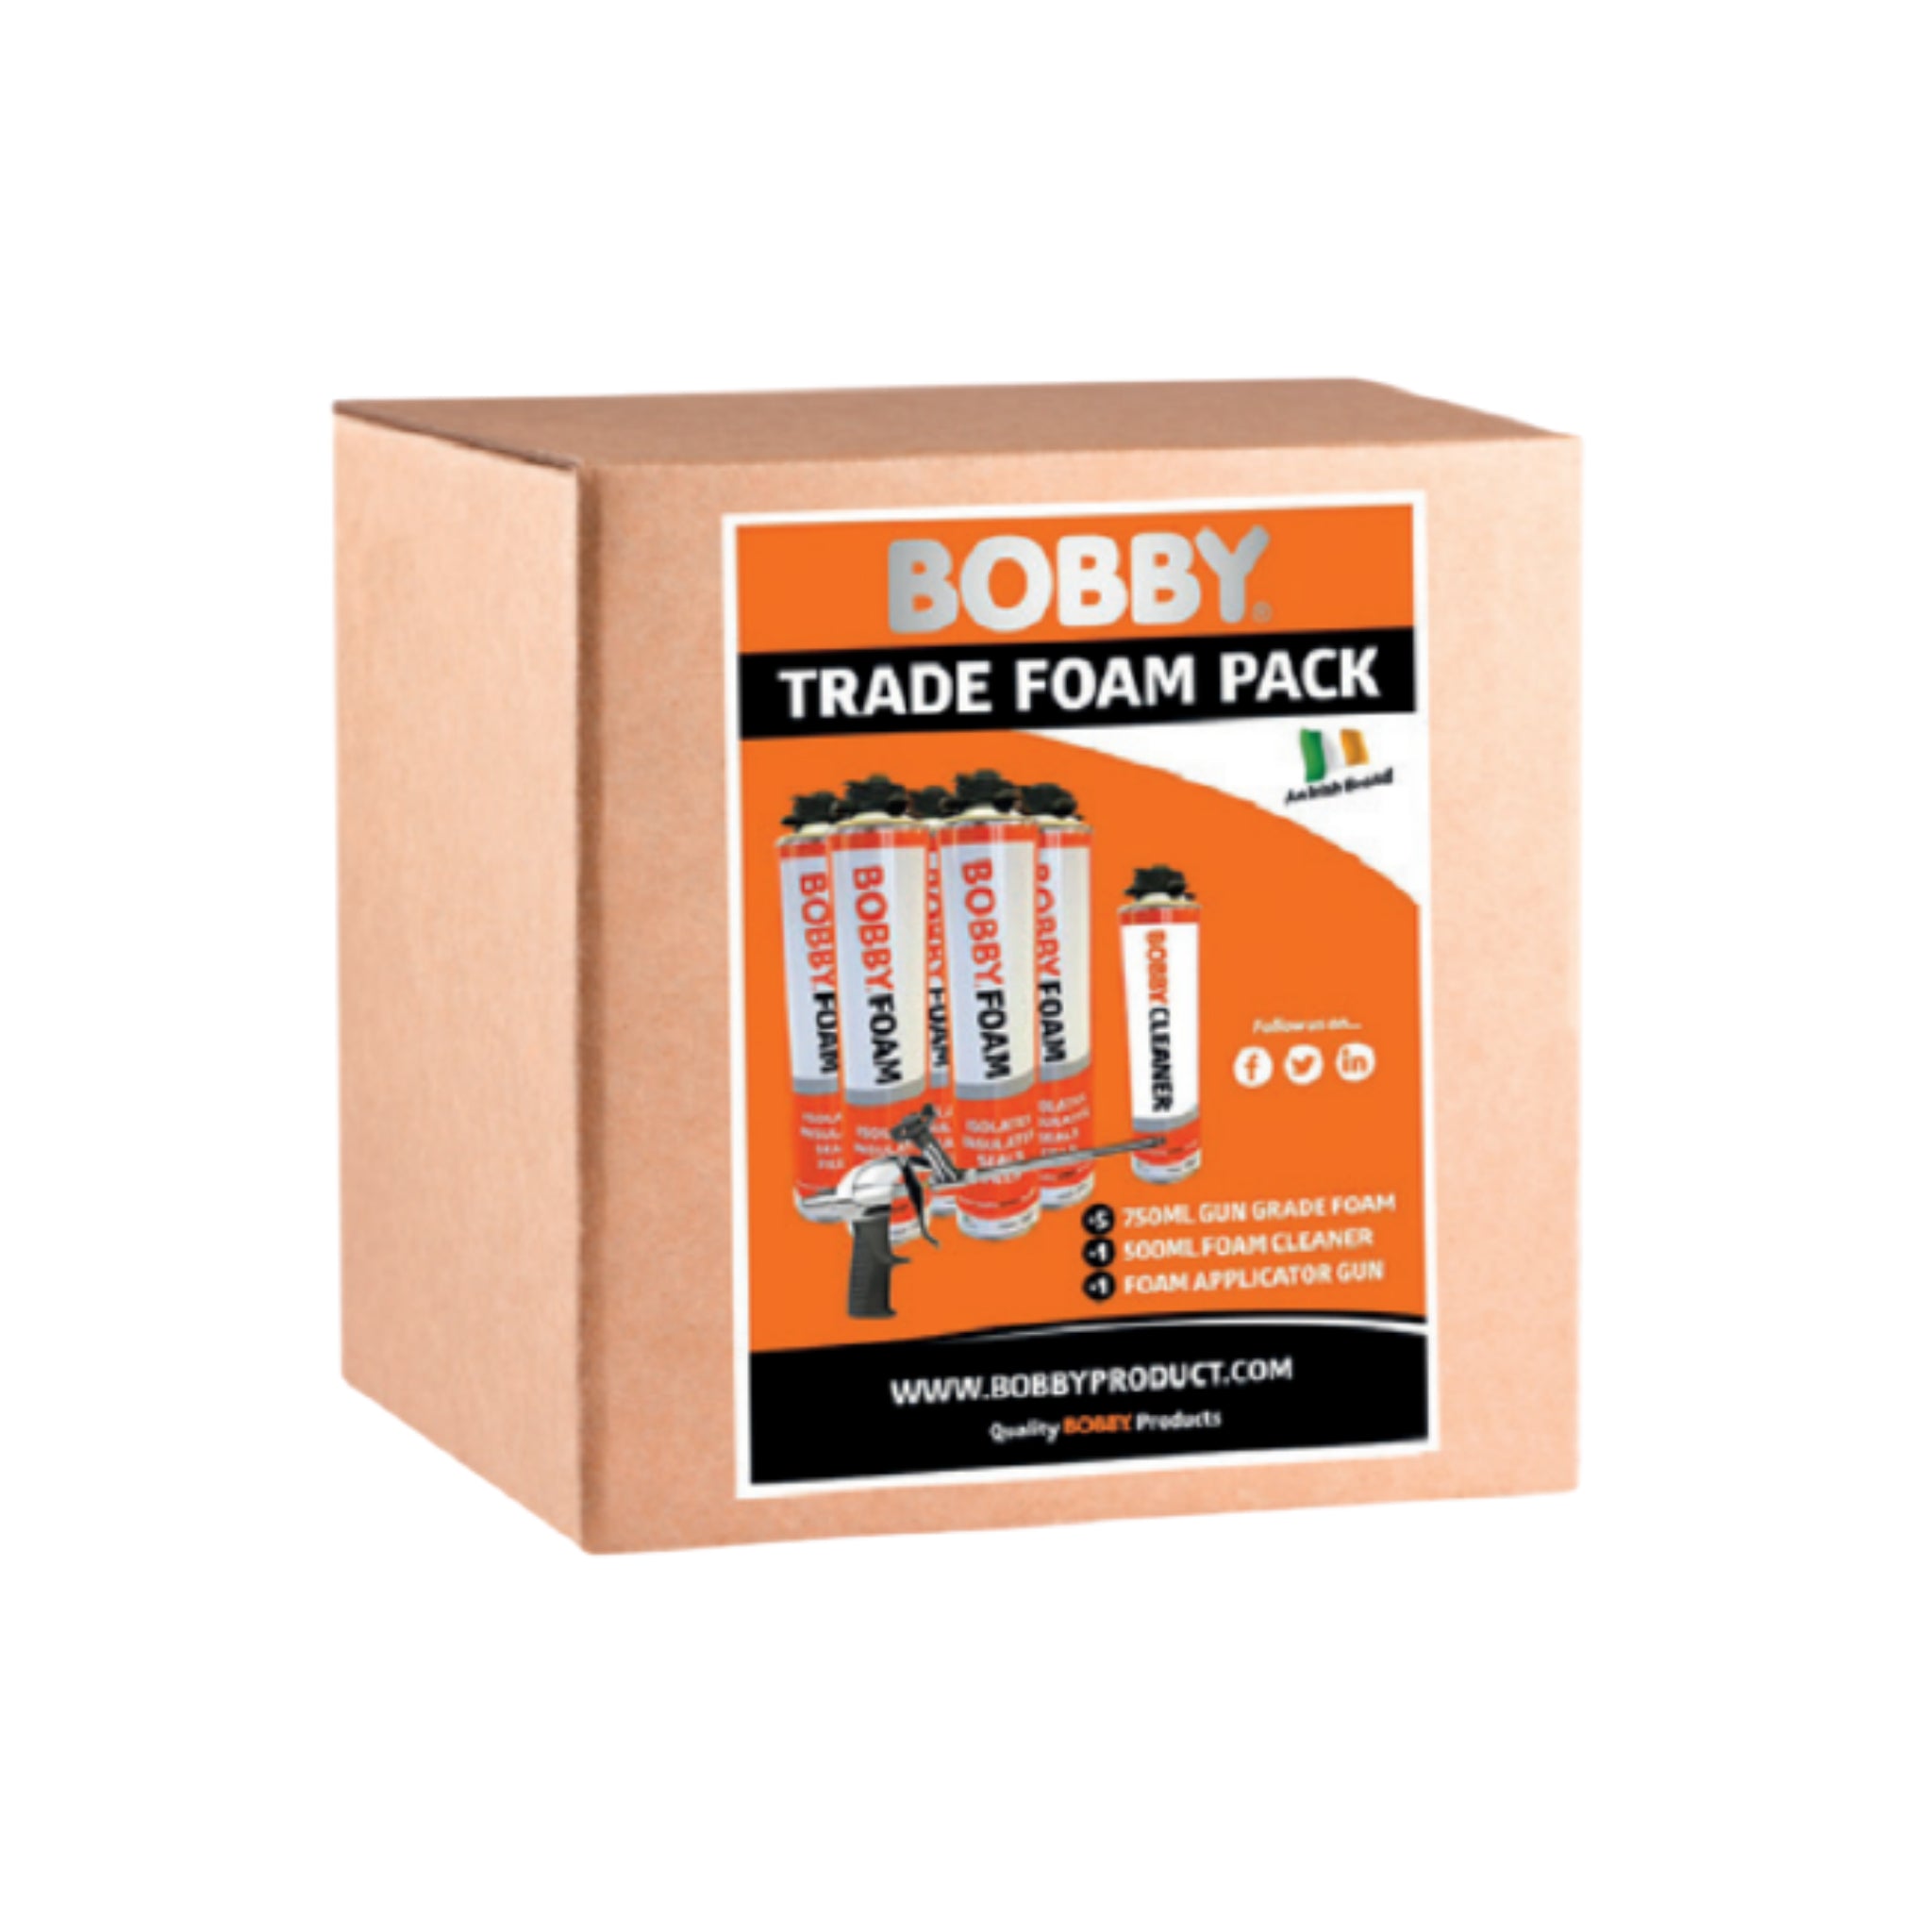 BOBBY Trade Foam Pack